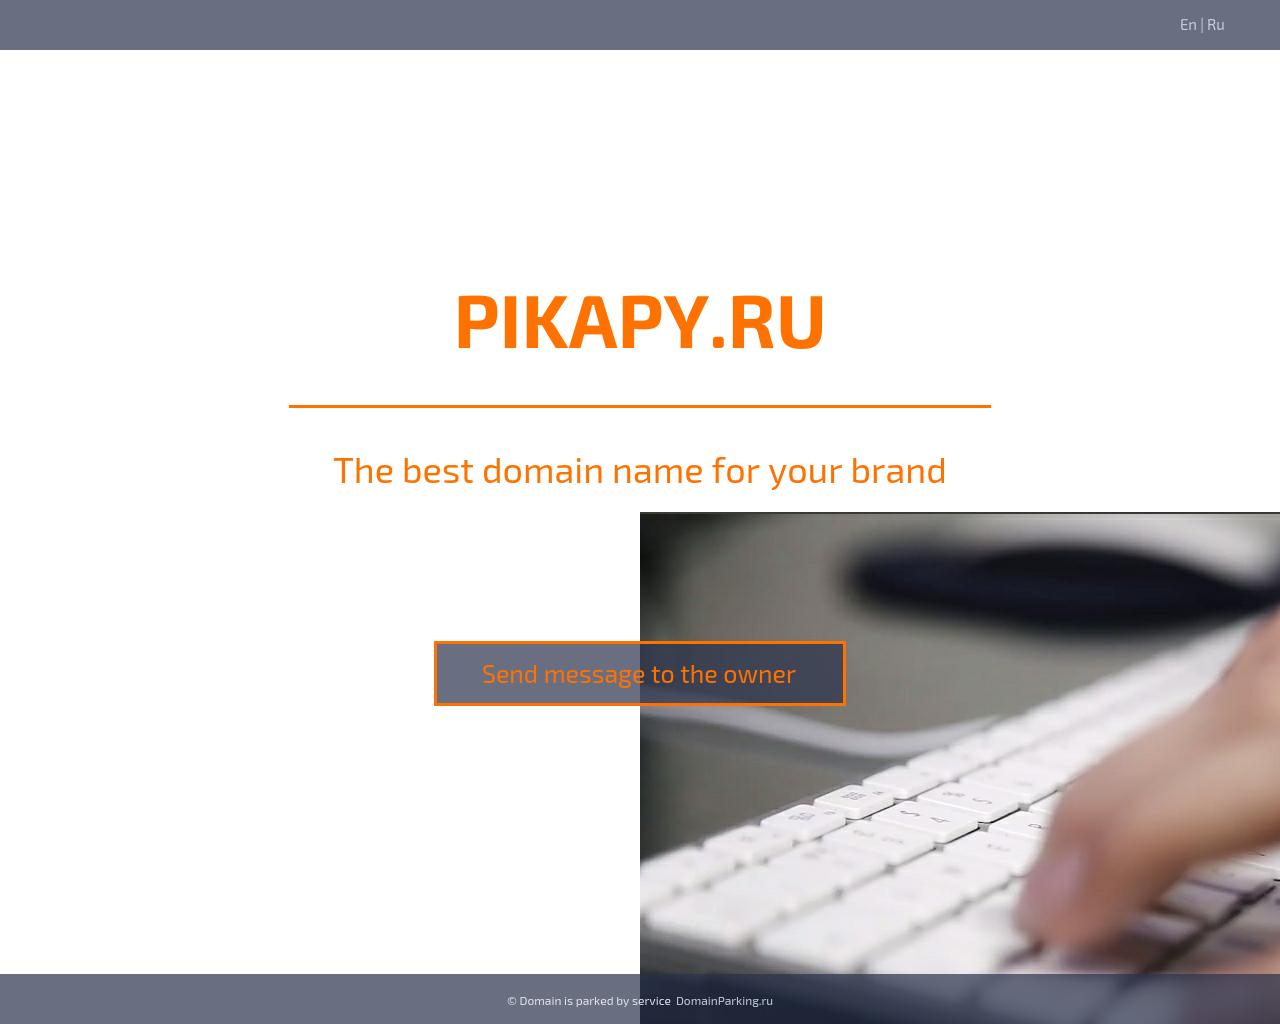 Изображение сайта pikapy.ru в разрешении 1280x1024